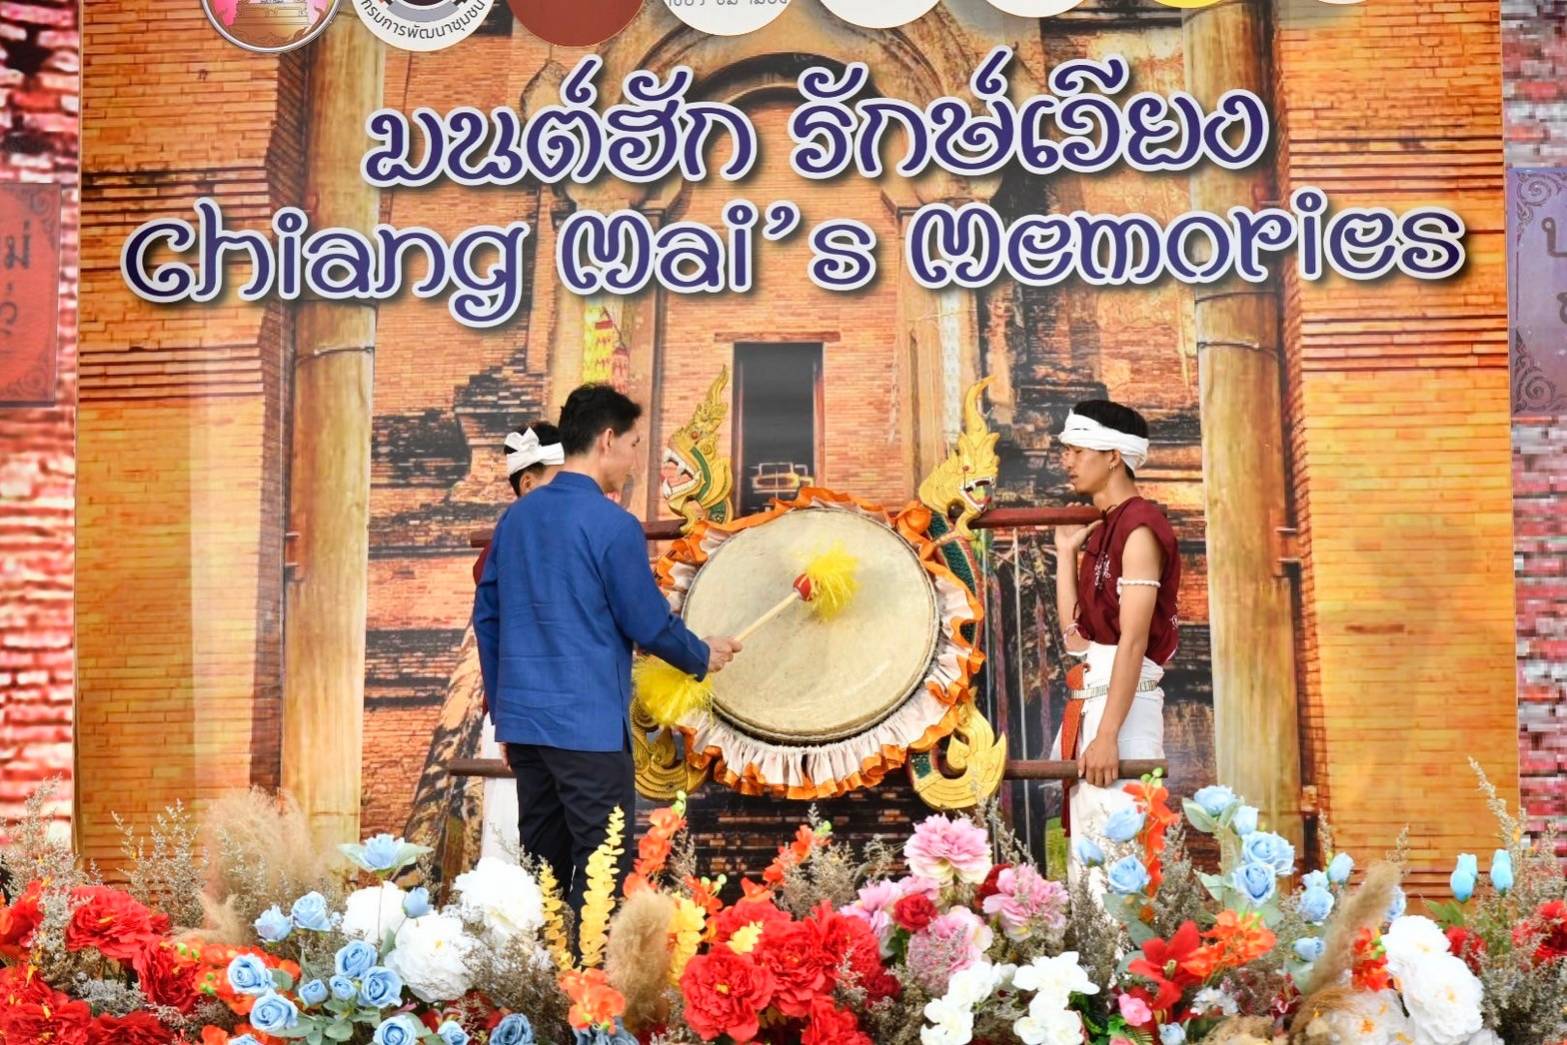 มนต์ฮัก รักษ์เวียง Chiang Mai's Memories